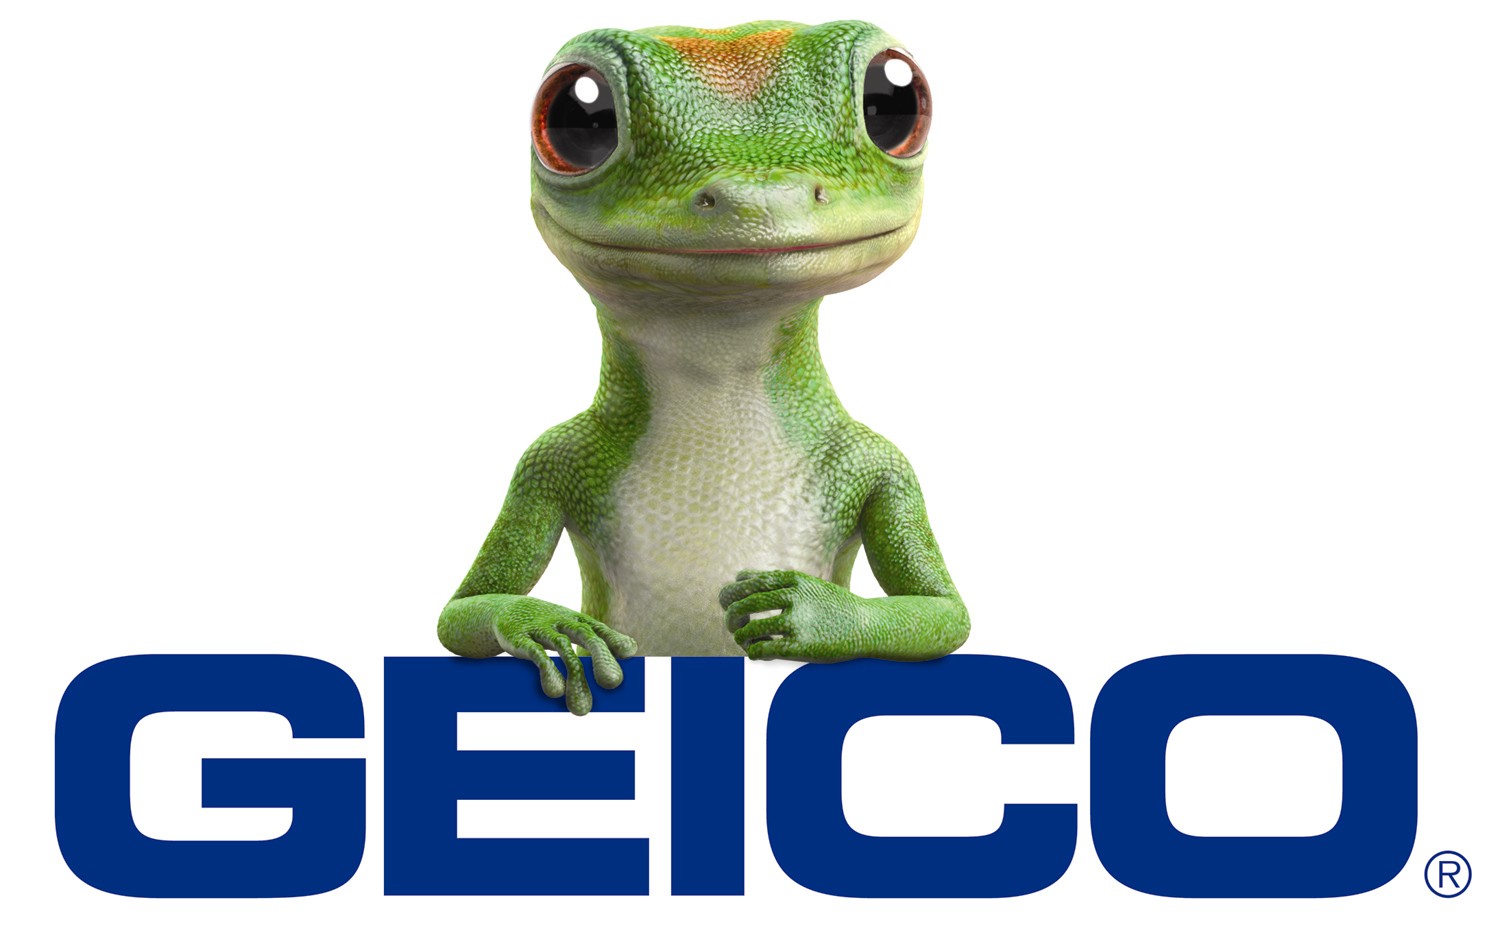 geico-logo-with-gecko.jpg?w=240